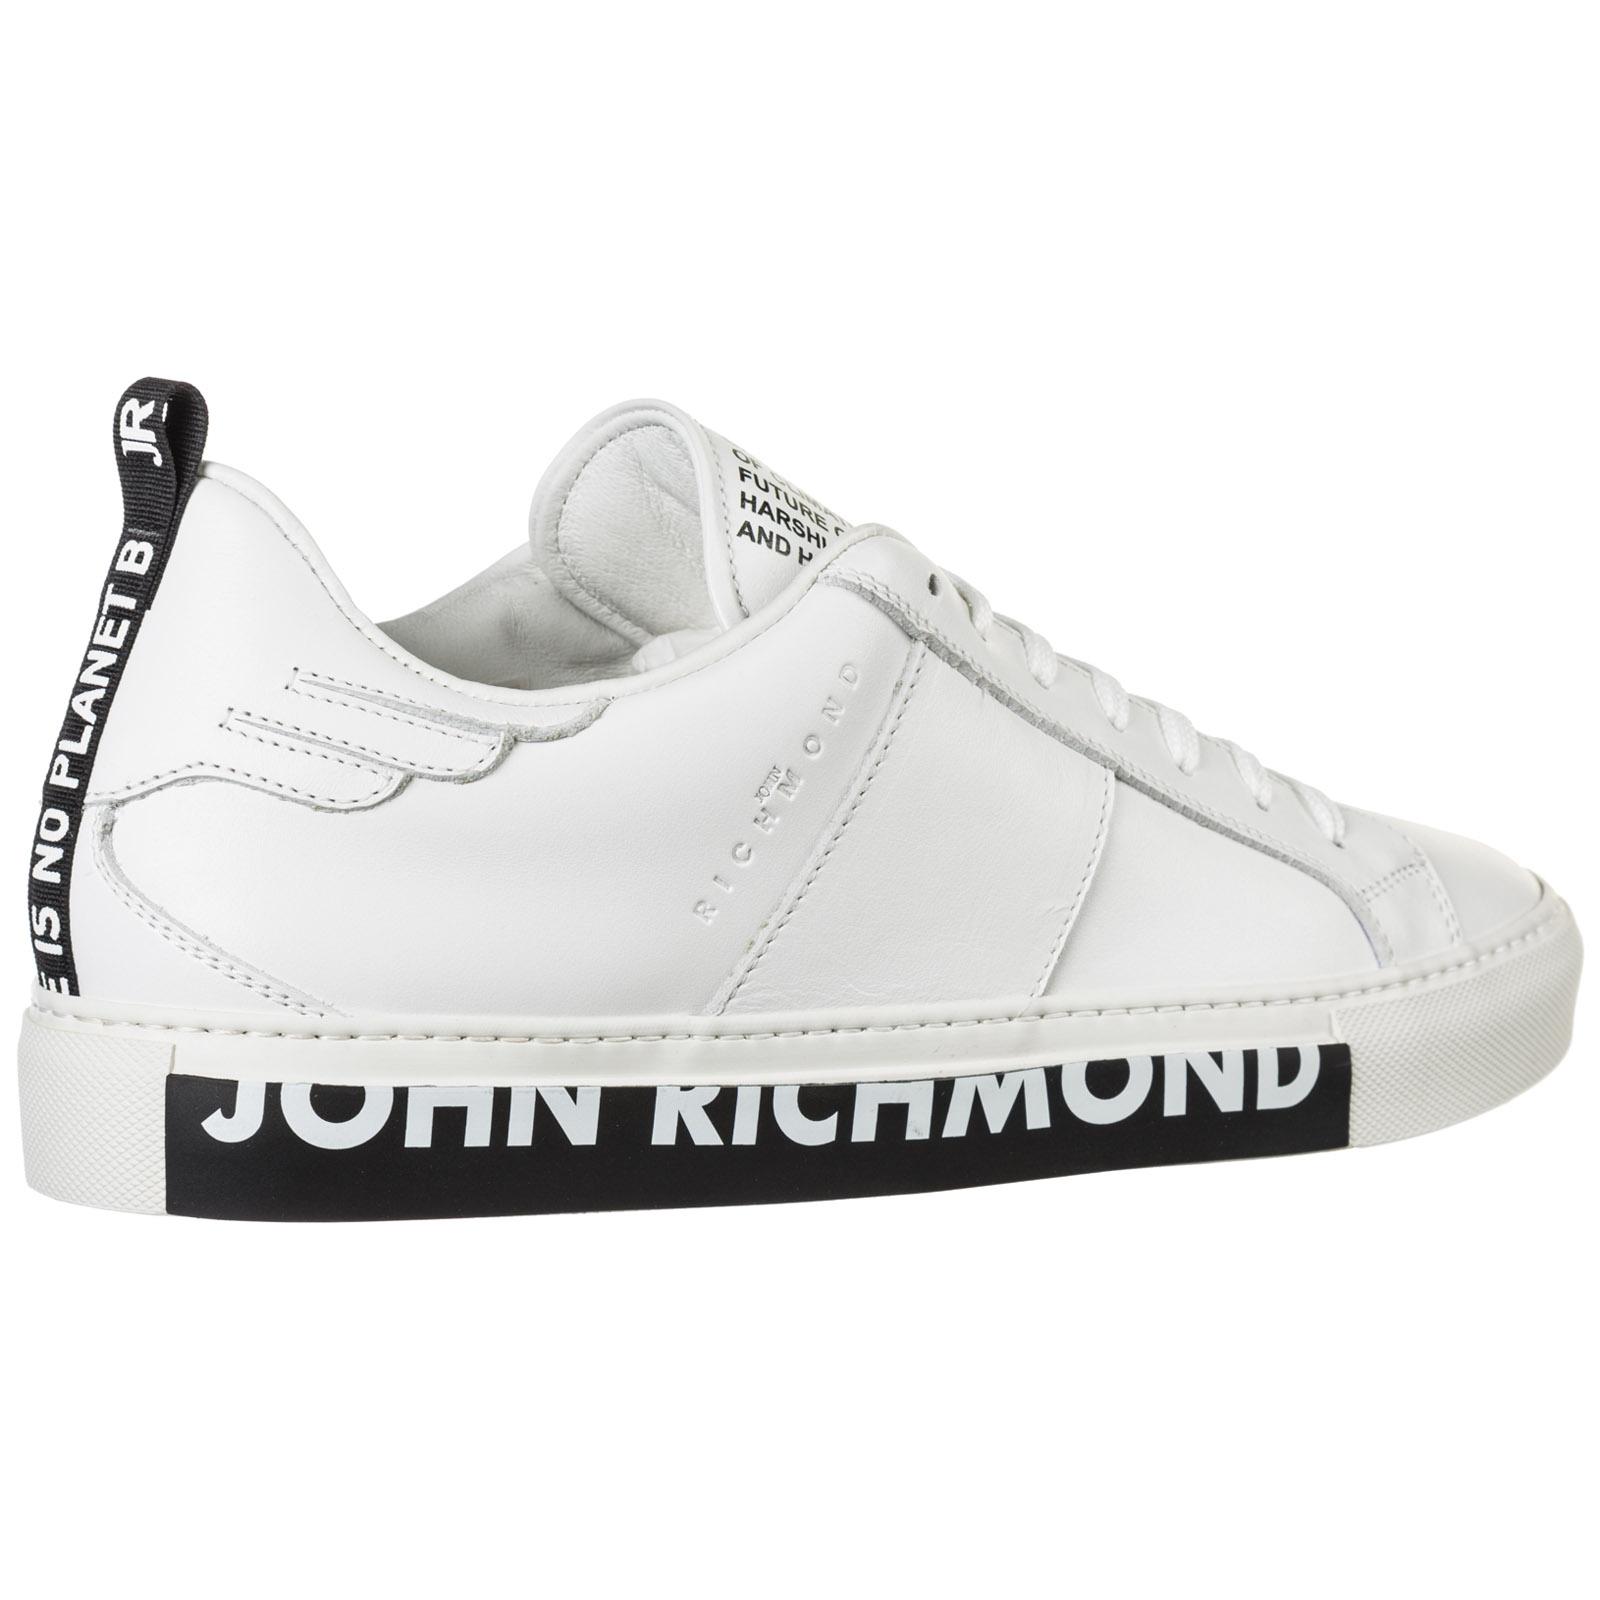 john richmond sneakers